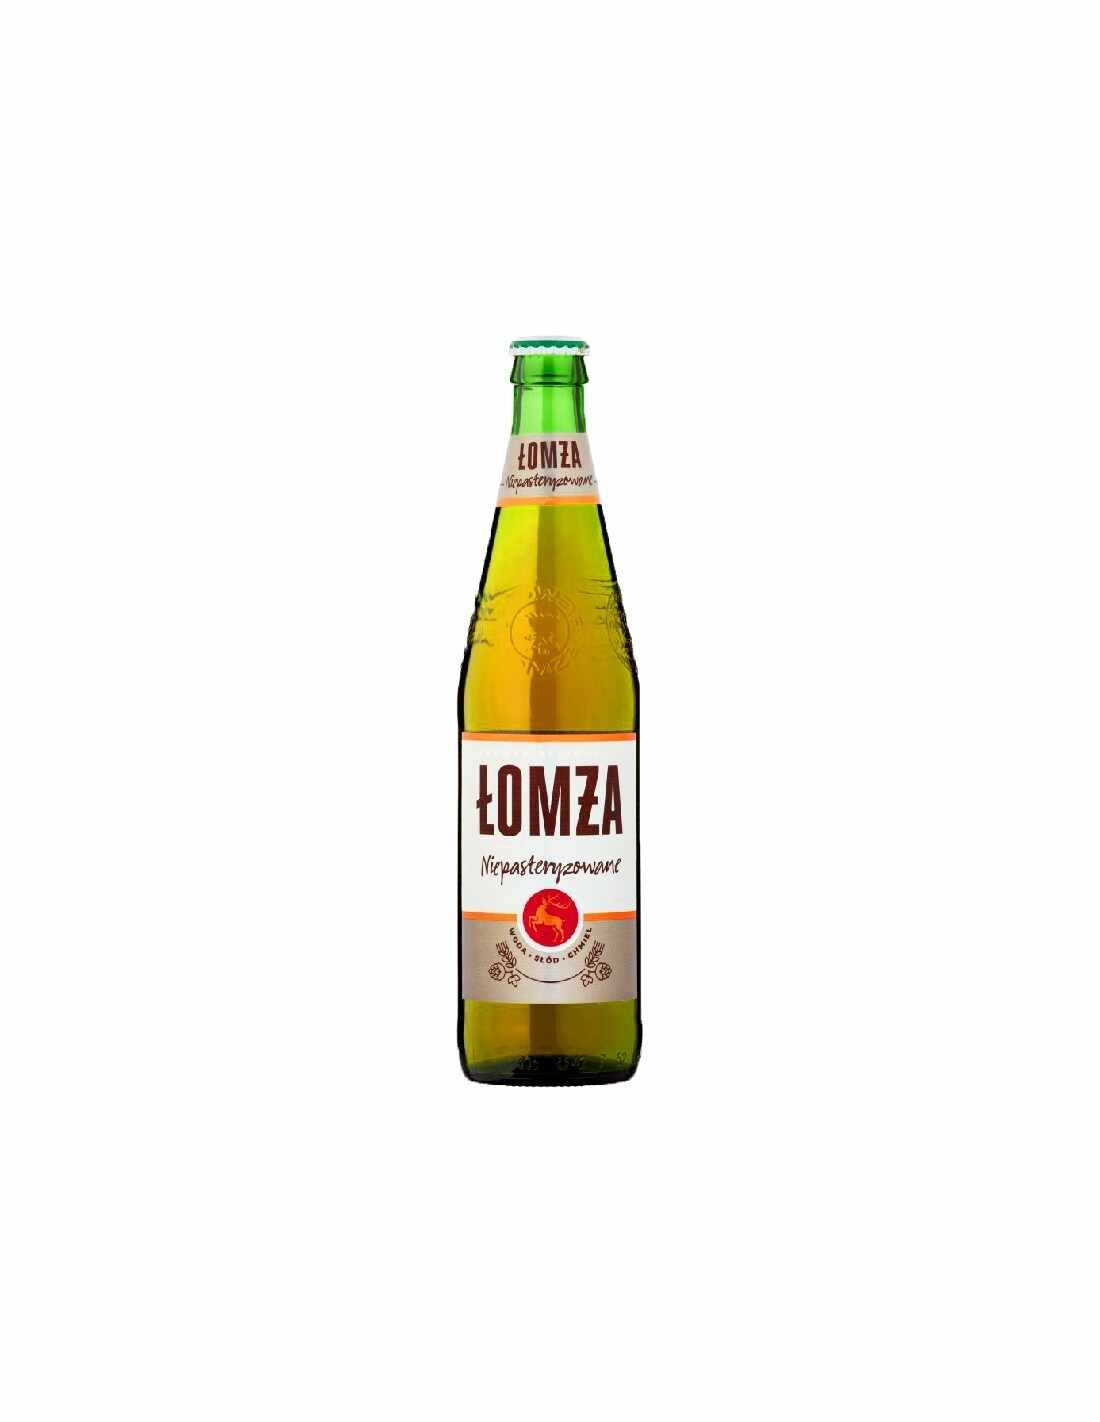 Bere blonda, nepasteurizata Lomza, 6% alc., 0.5L, Polonia